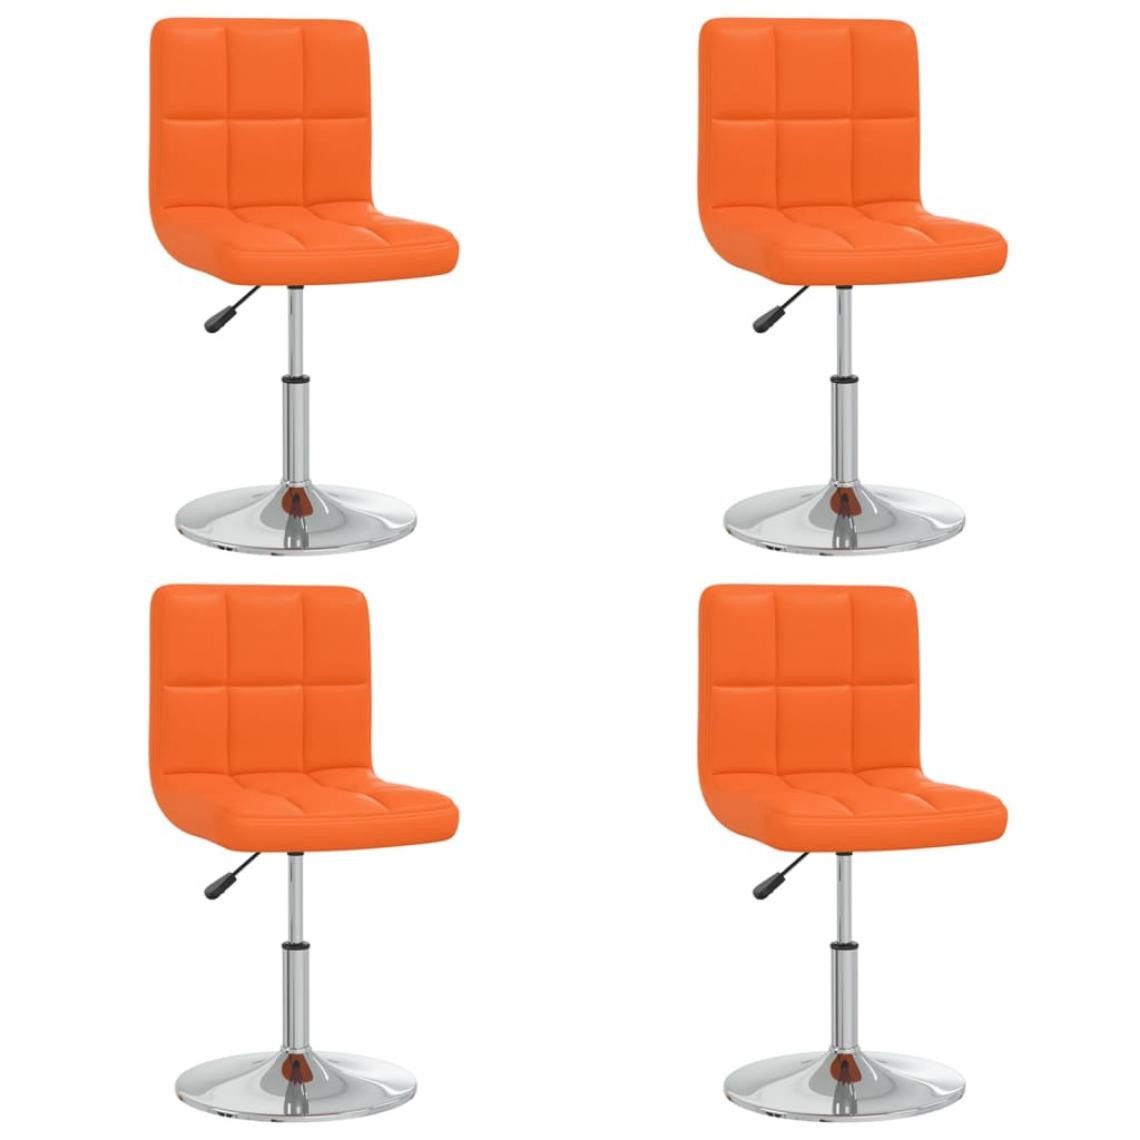 Decoshop26 - Lot de 4 chaises de salle à manger cuisine design contemporain similicuir orange CDS021873 - Chaises